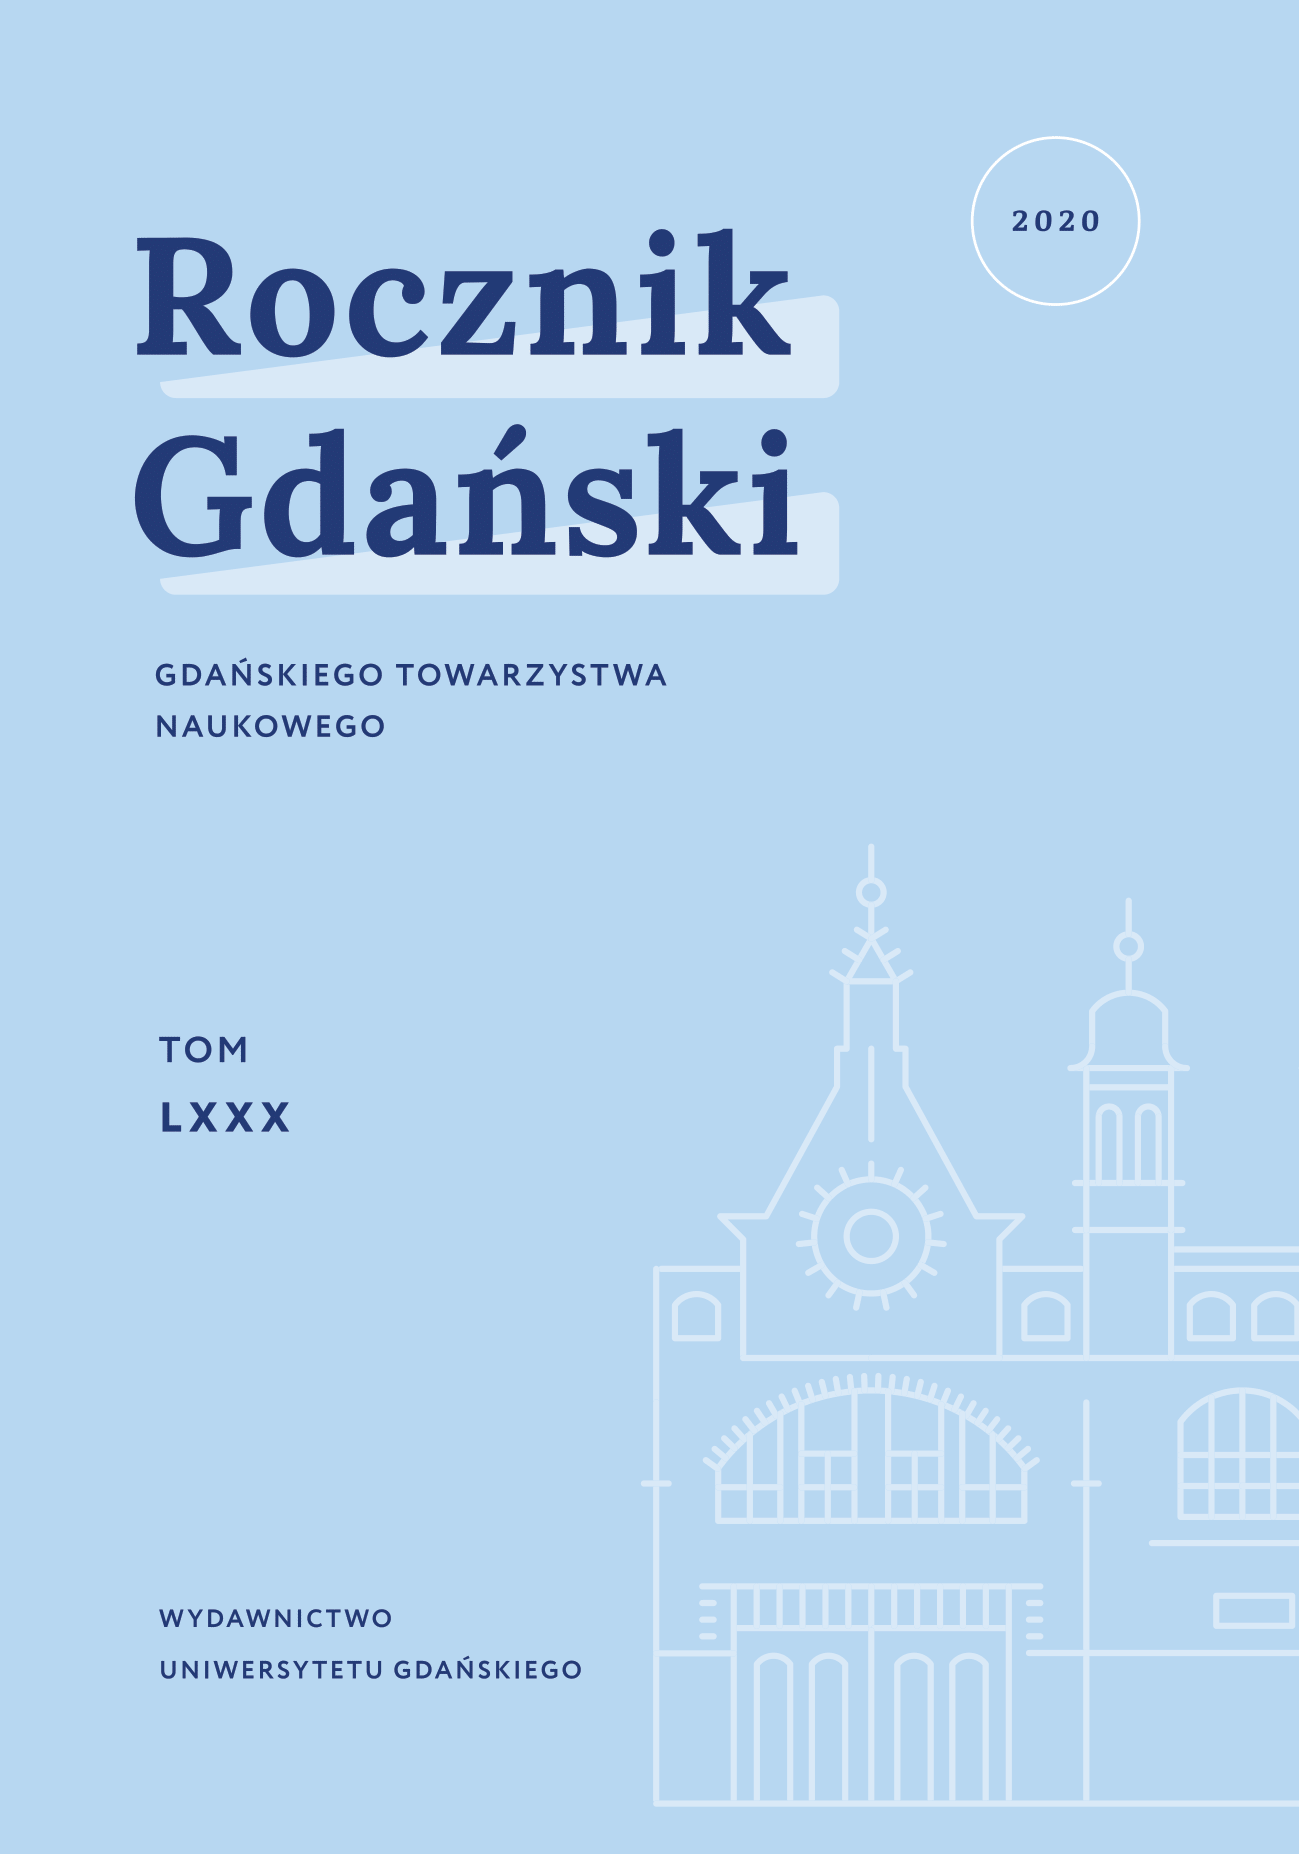 rocznik gdanski 2020